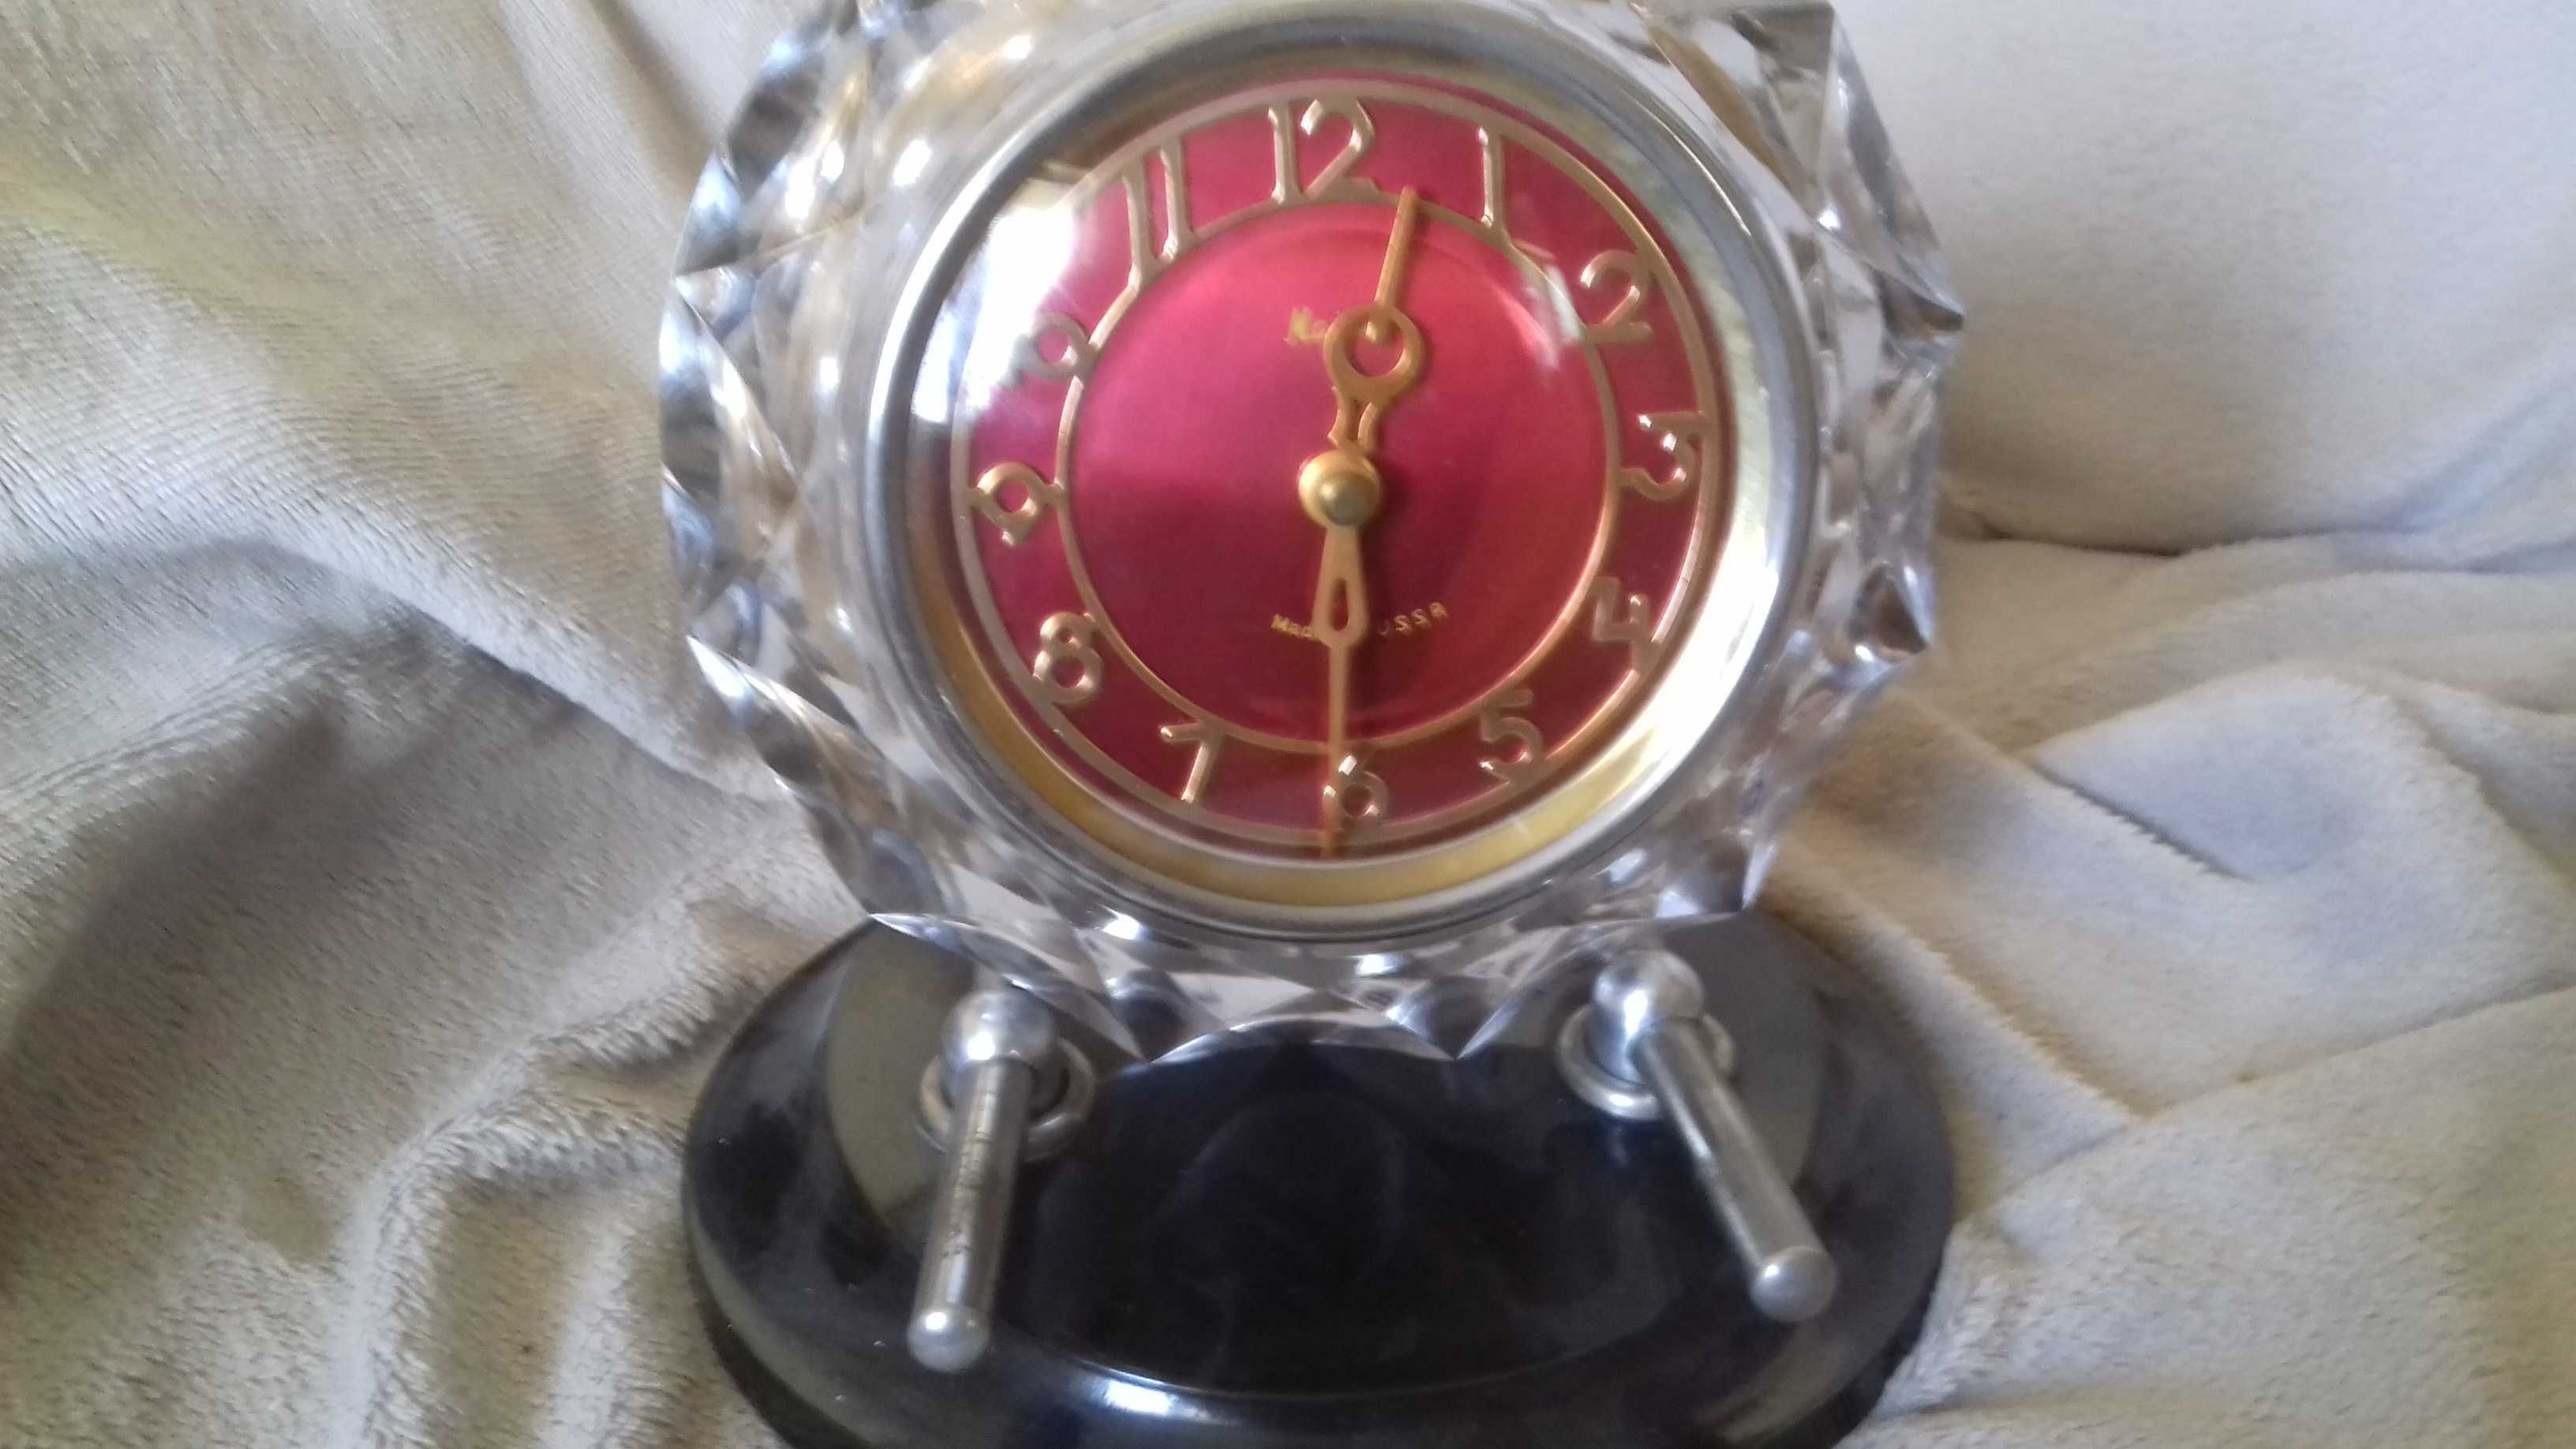 zegar radziecki  majak